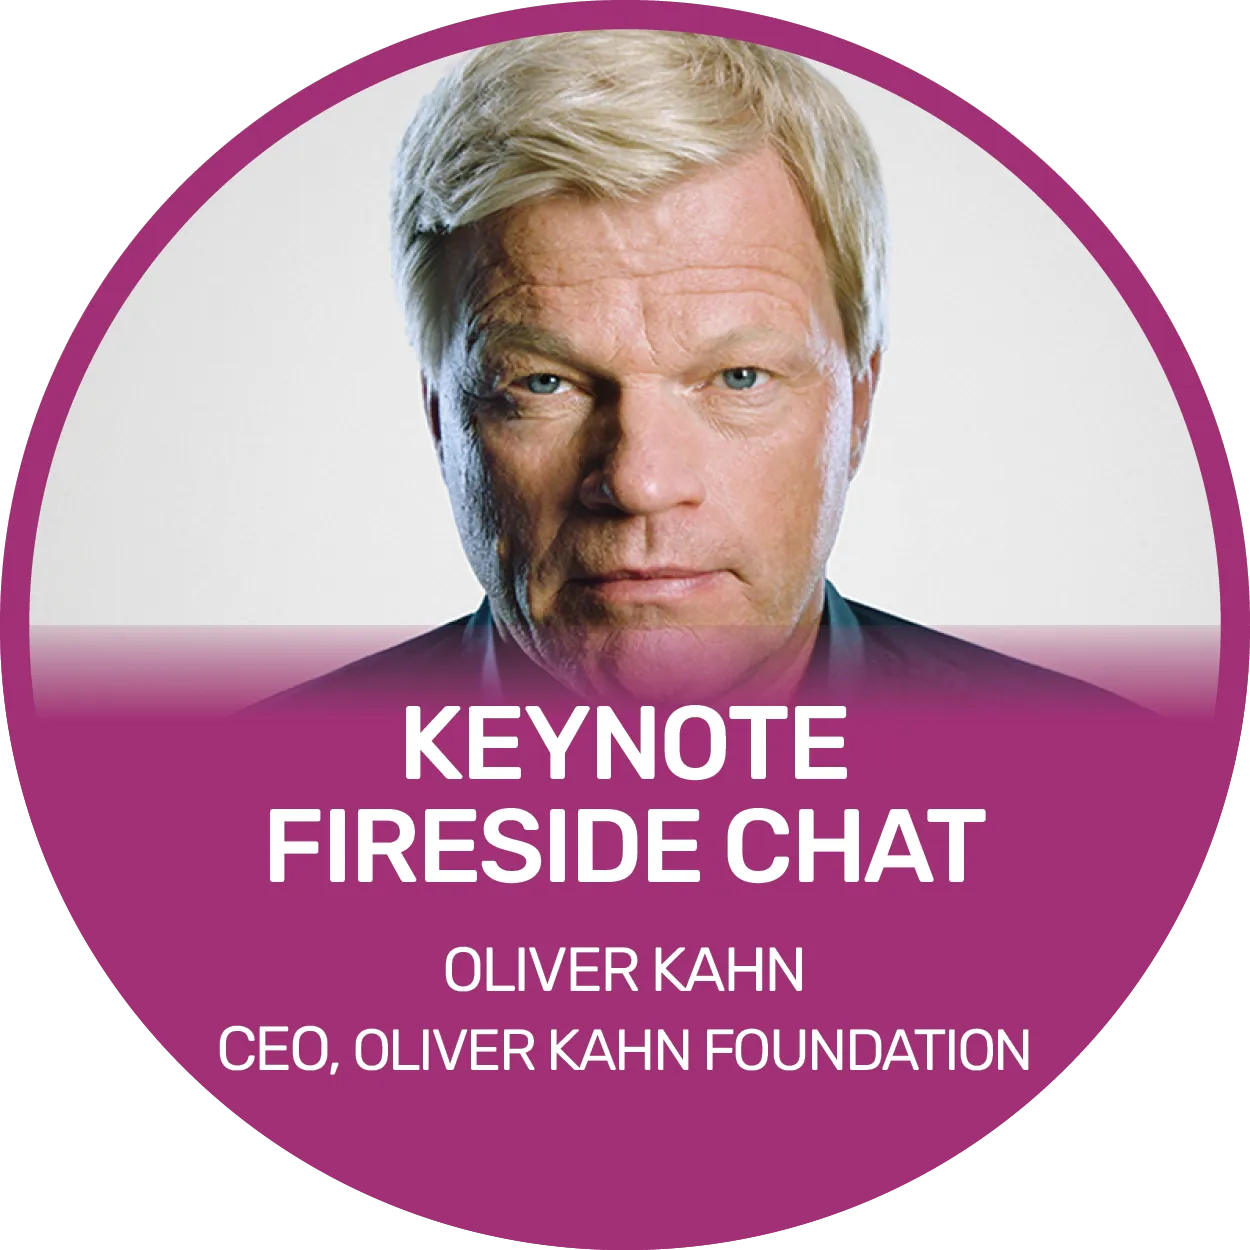 Keynote fireside chat - Oliver Kahn, CEO, Oliver Kahn Foundation